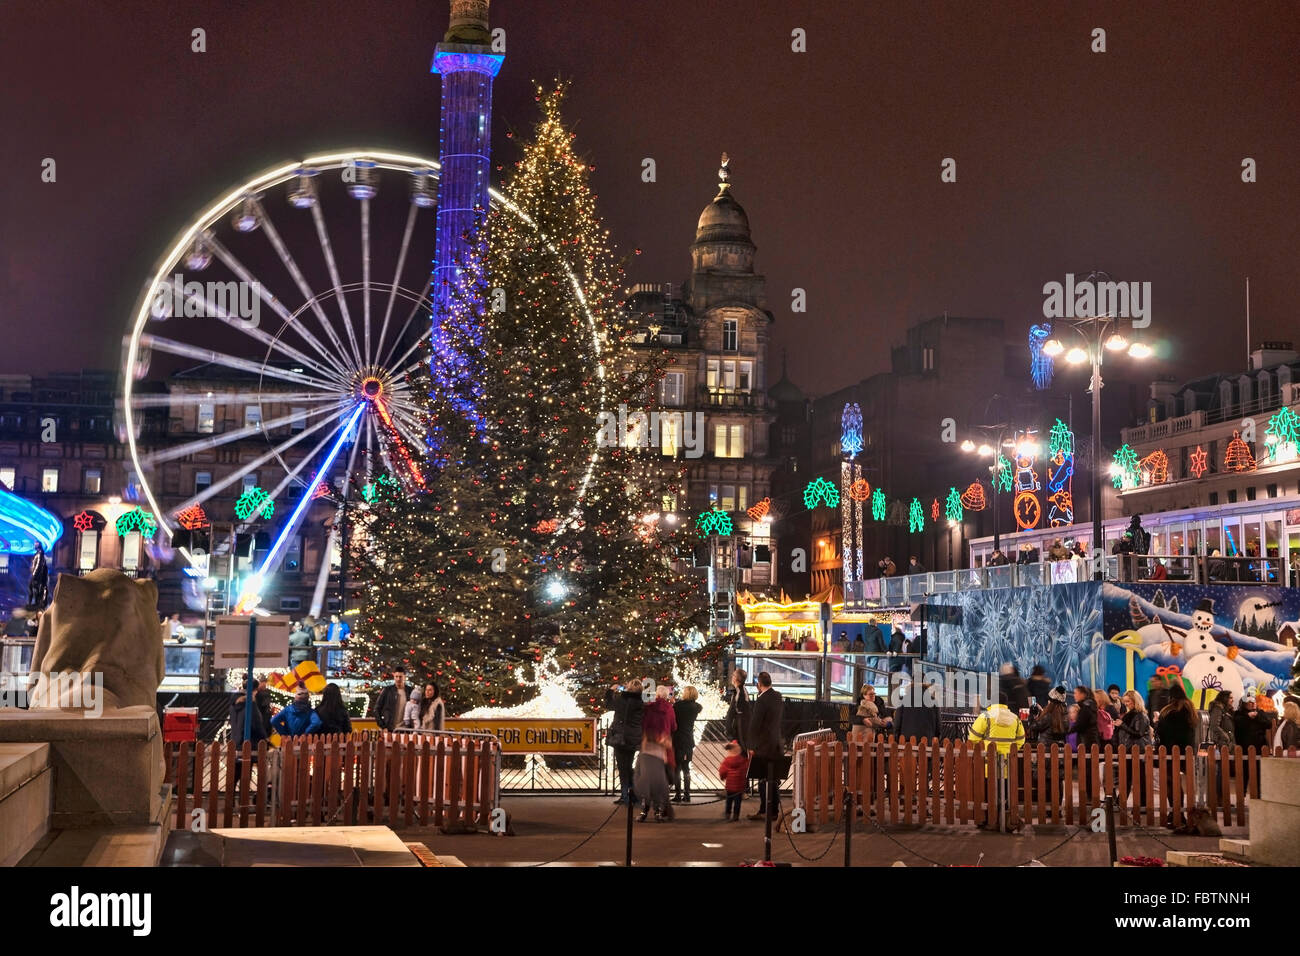 George Square Glasgow, lumières de Noël et décorations, Ecosse, Royaume-Uni Banque D'Images